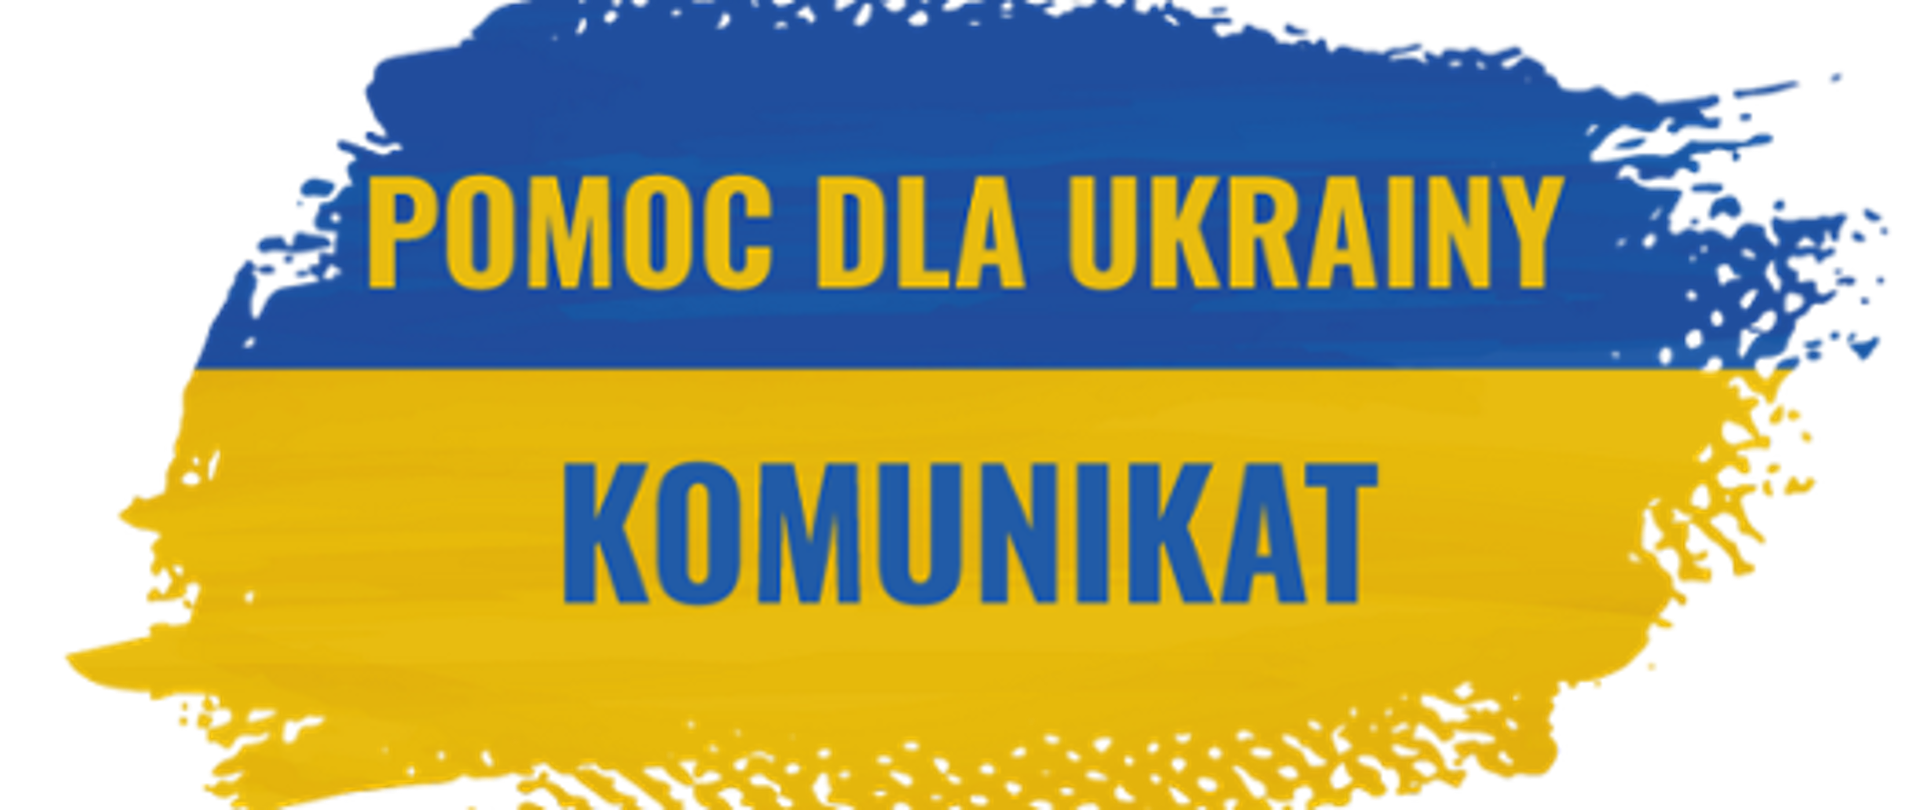 zdjęcie przedstawia flagę Ukrainy w kolorze niebiesko-żółtym z napisem pomoc dla Ukrainy komunikat